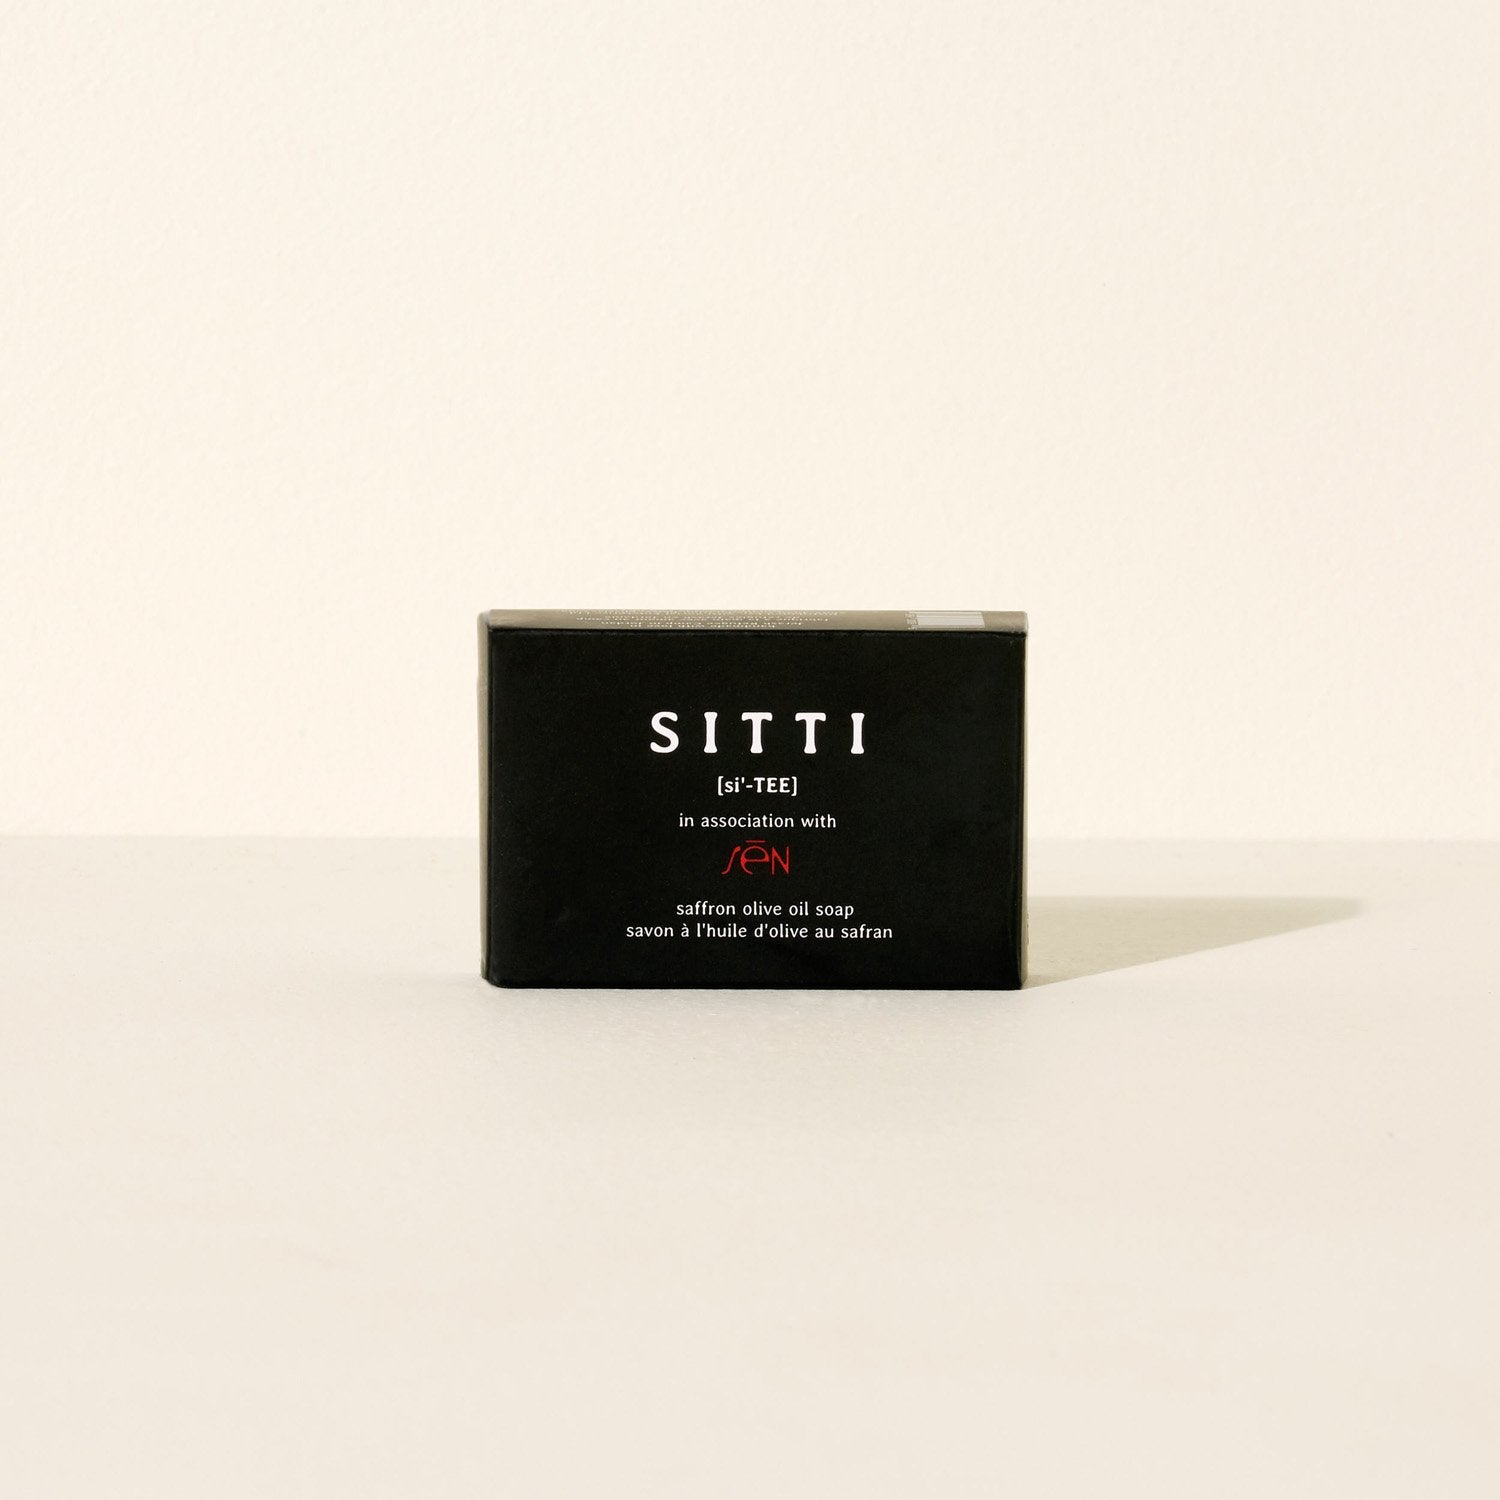 Goodee-SITTI-Saffron Olive Oil Soap